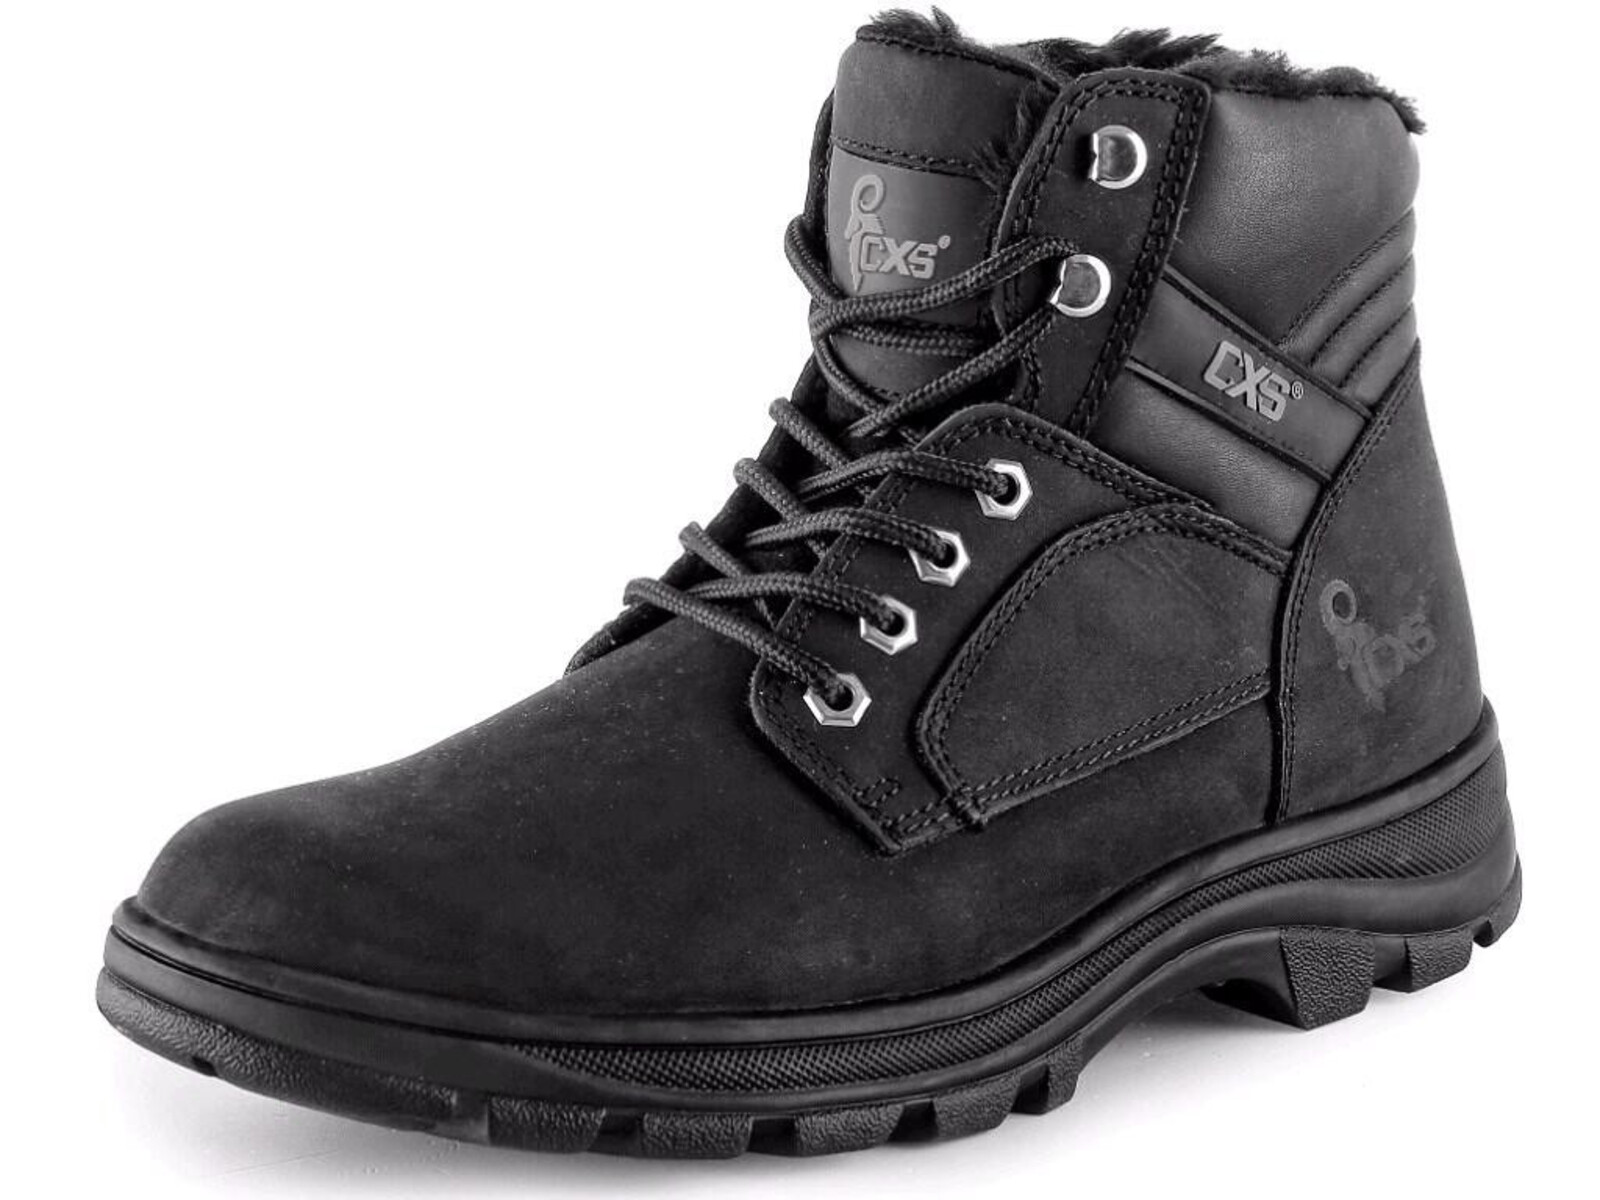 Zimná členková obuv CXS Road Industry FO E CI SRA - veľkosť: 40, farba: čierna